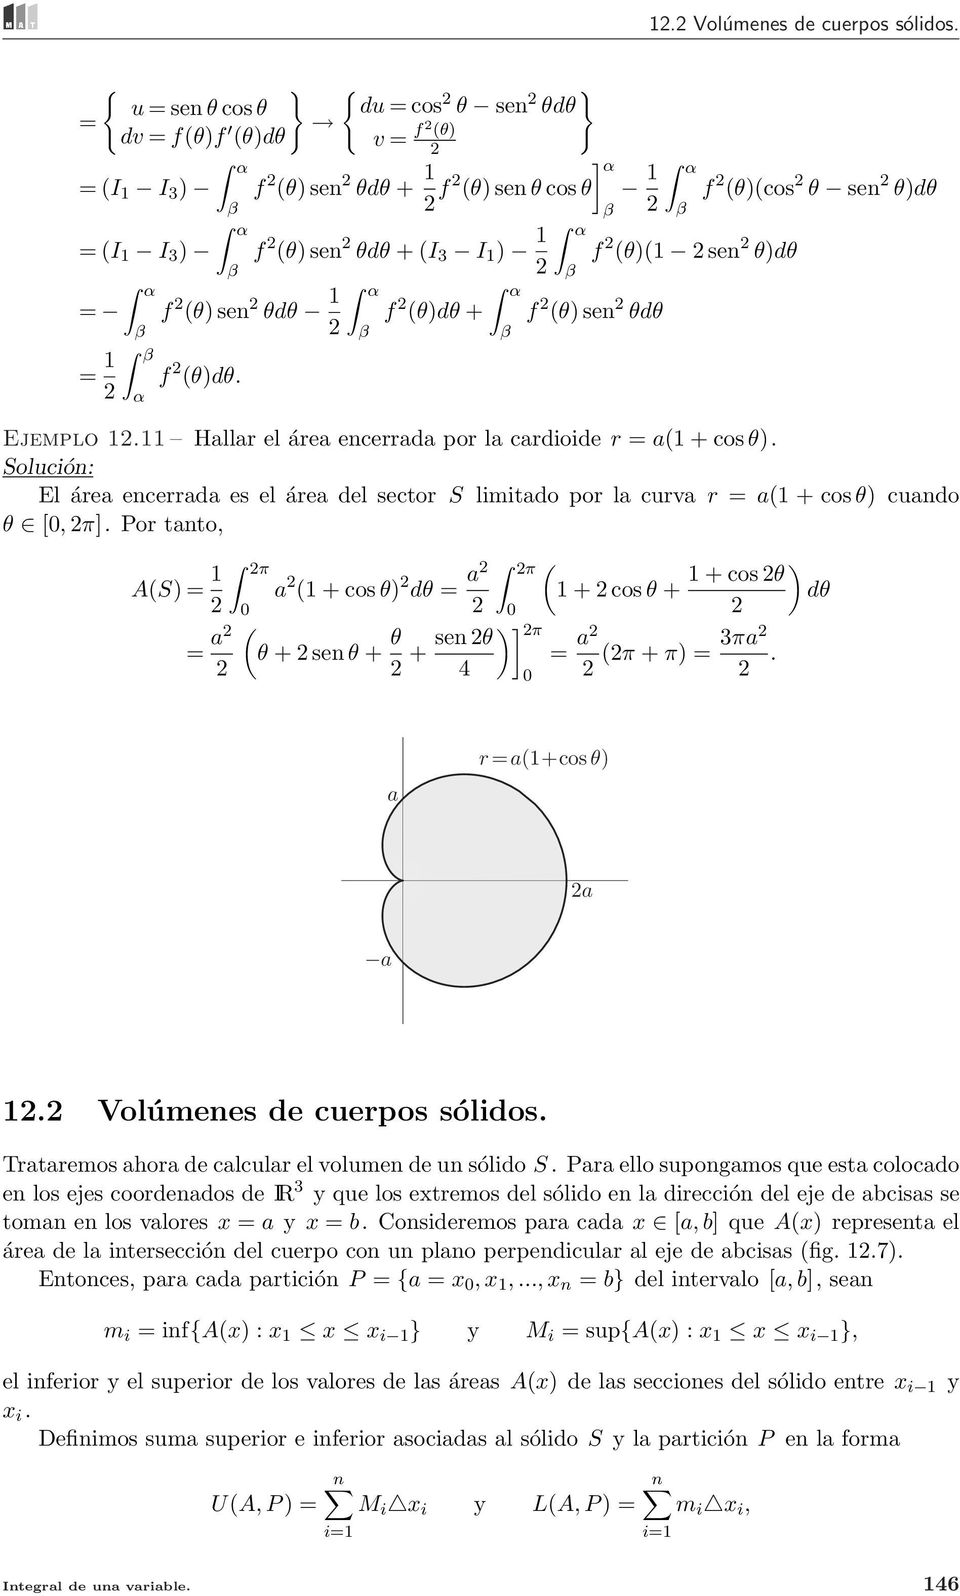 El áre encerrd es el áre del sector S limitdo por l curv r = (1 + cos θ) cundo θ [, π].